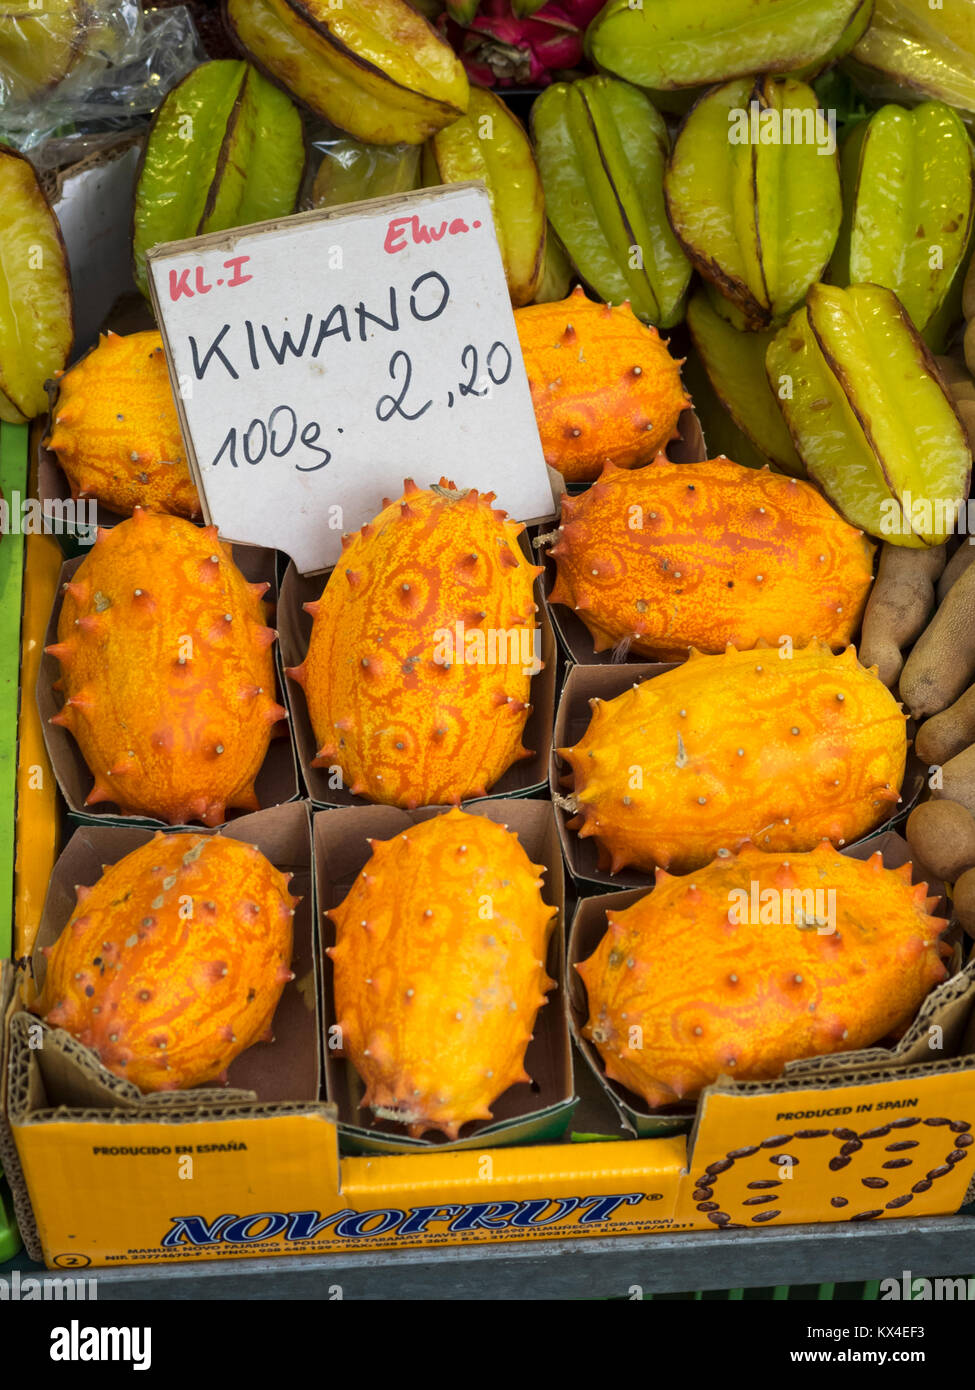 VIENNE, AUTRICHE - 04 DÉCEMBRE 2017 : Melon à cornes africaines (Kiwano) en vente au marché Naschmarkt Banque D'Images